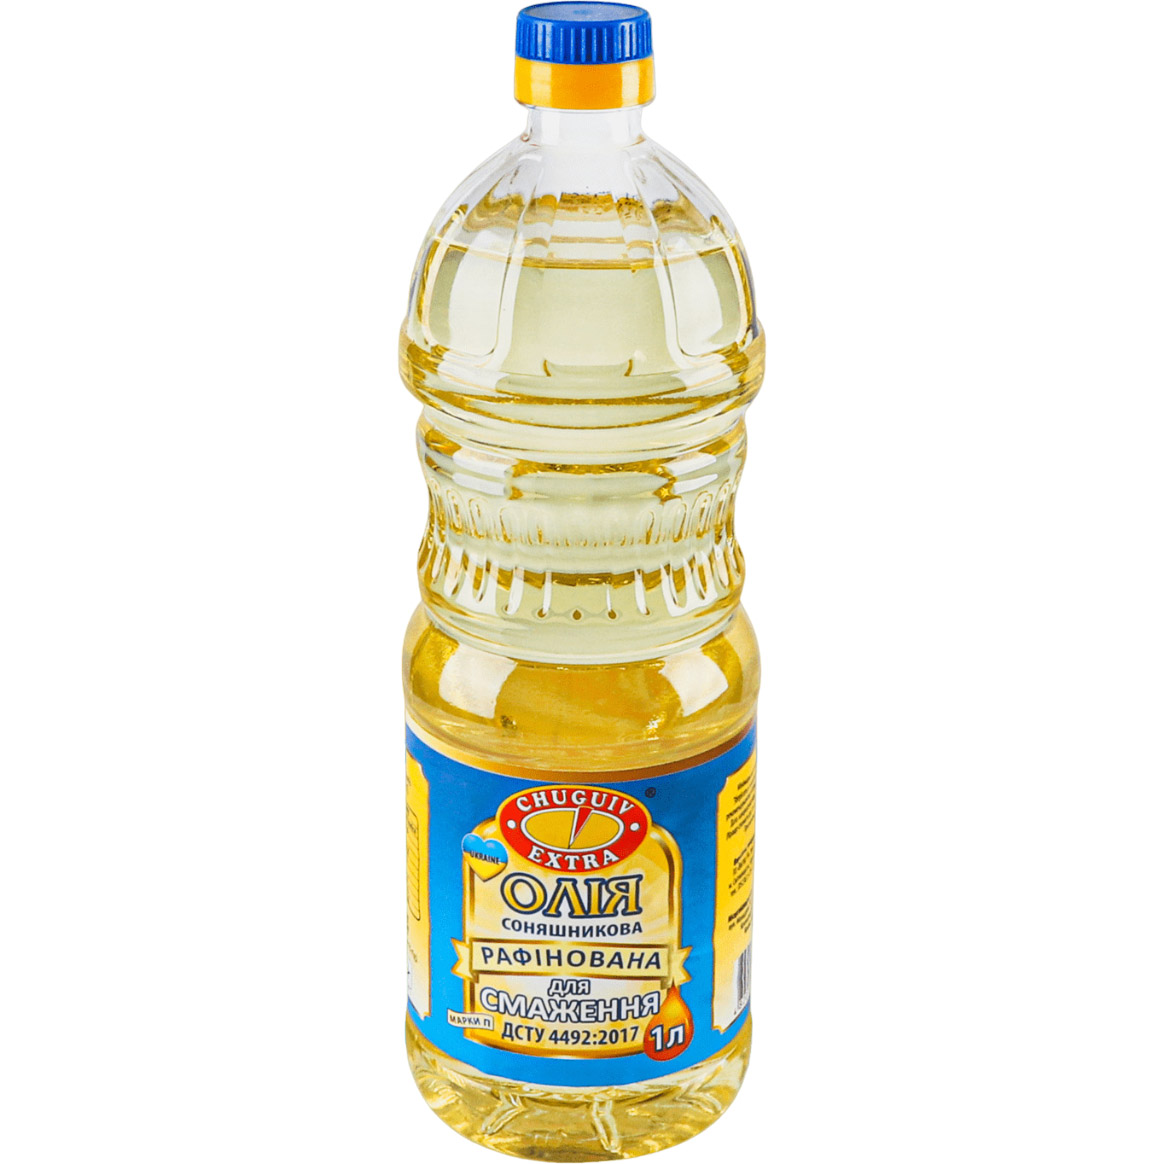 Масло подсолнечное Chuguiv Extra для жарки 1 л (921298) - фото 1